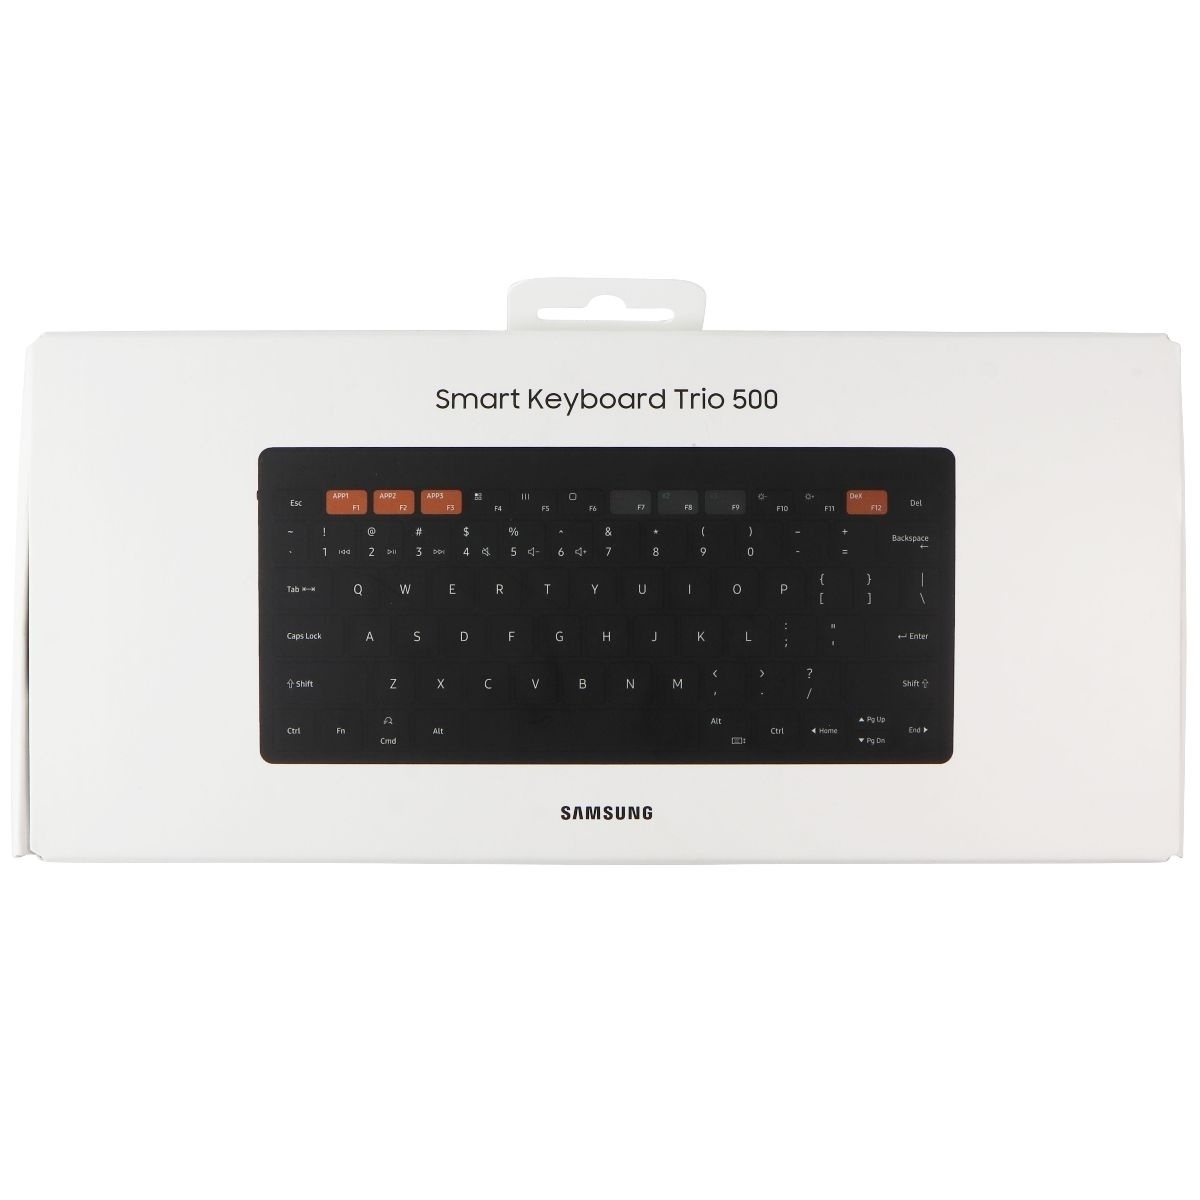 SAMSUNG Bluetooth Smart Keyboard Trio 500 - Black (EJ-B3400UBEGUS)